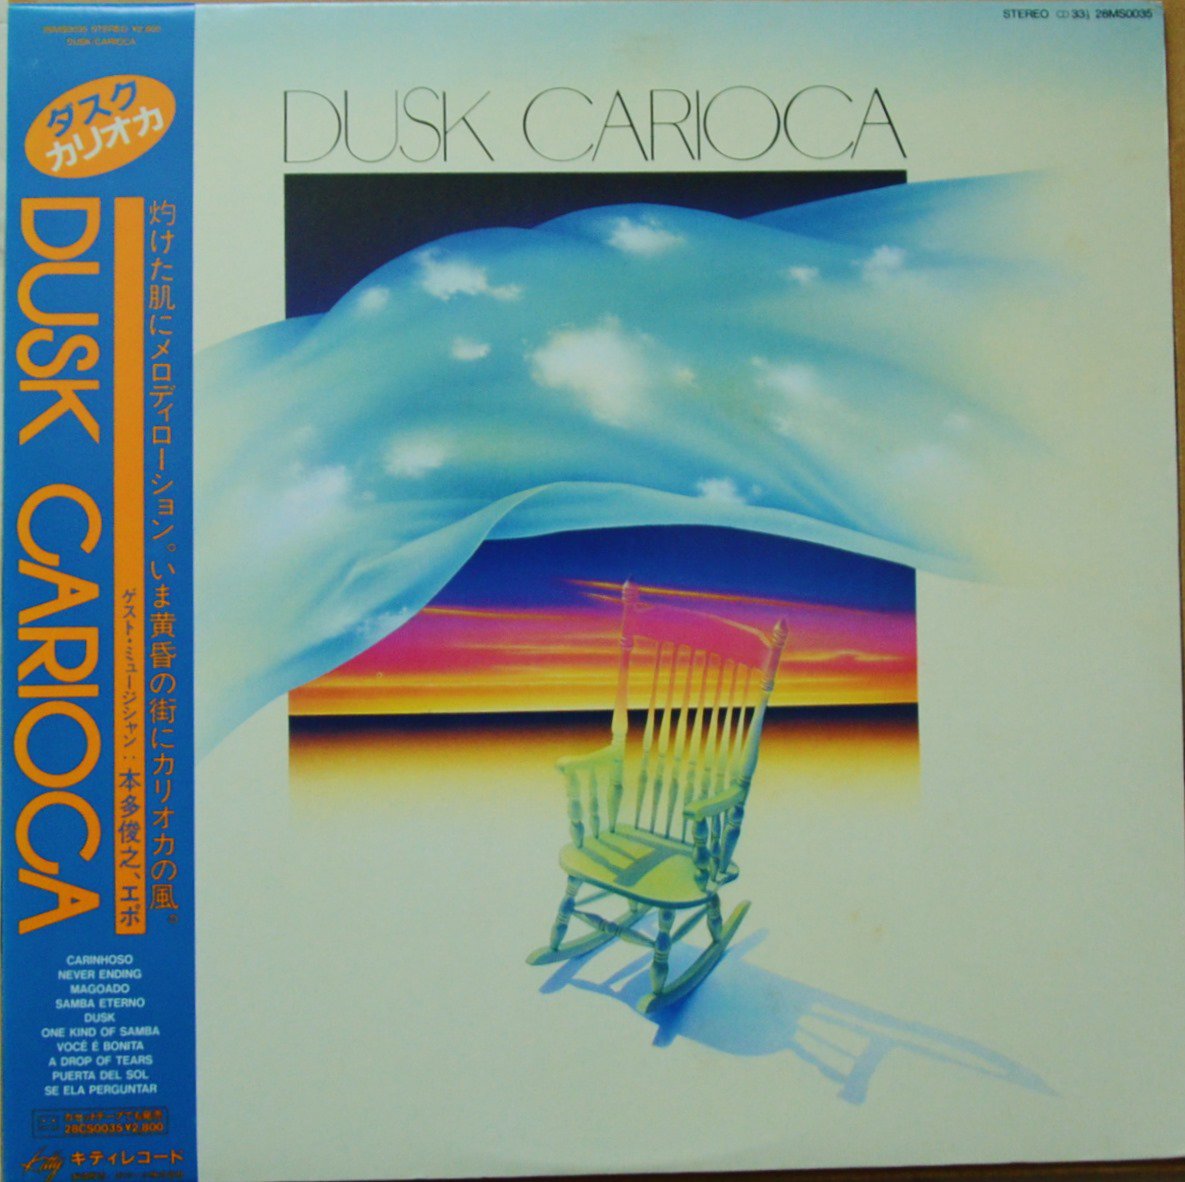 カリオカ CARIOCA / ダスク DUSK (LP) - HIP TANK RECORDS